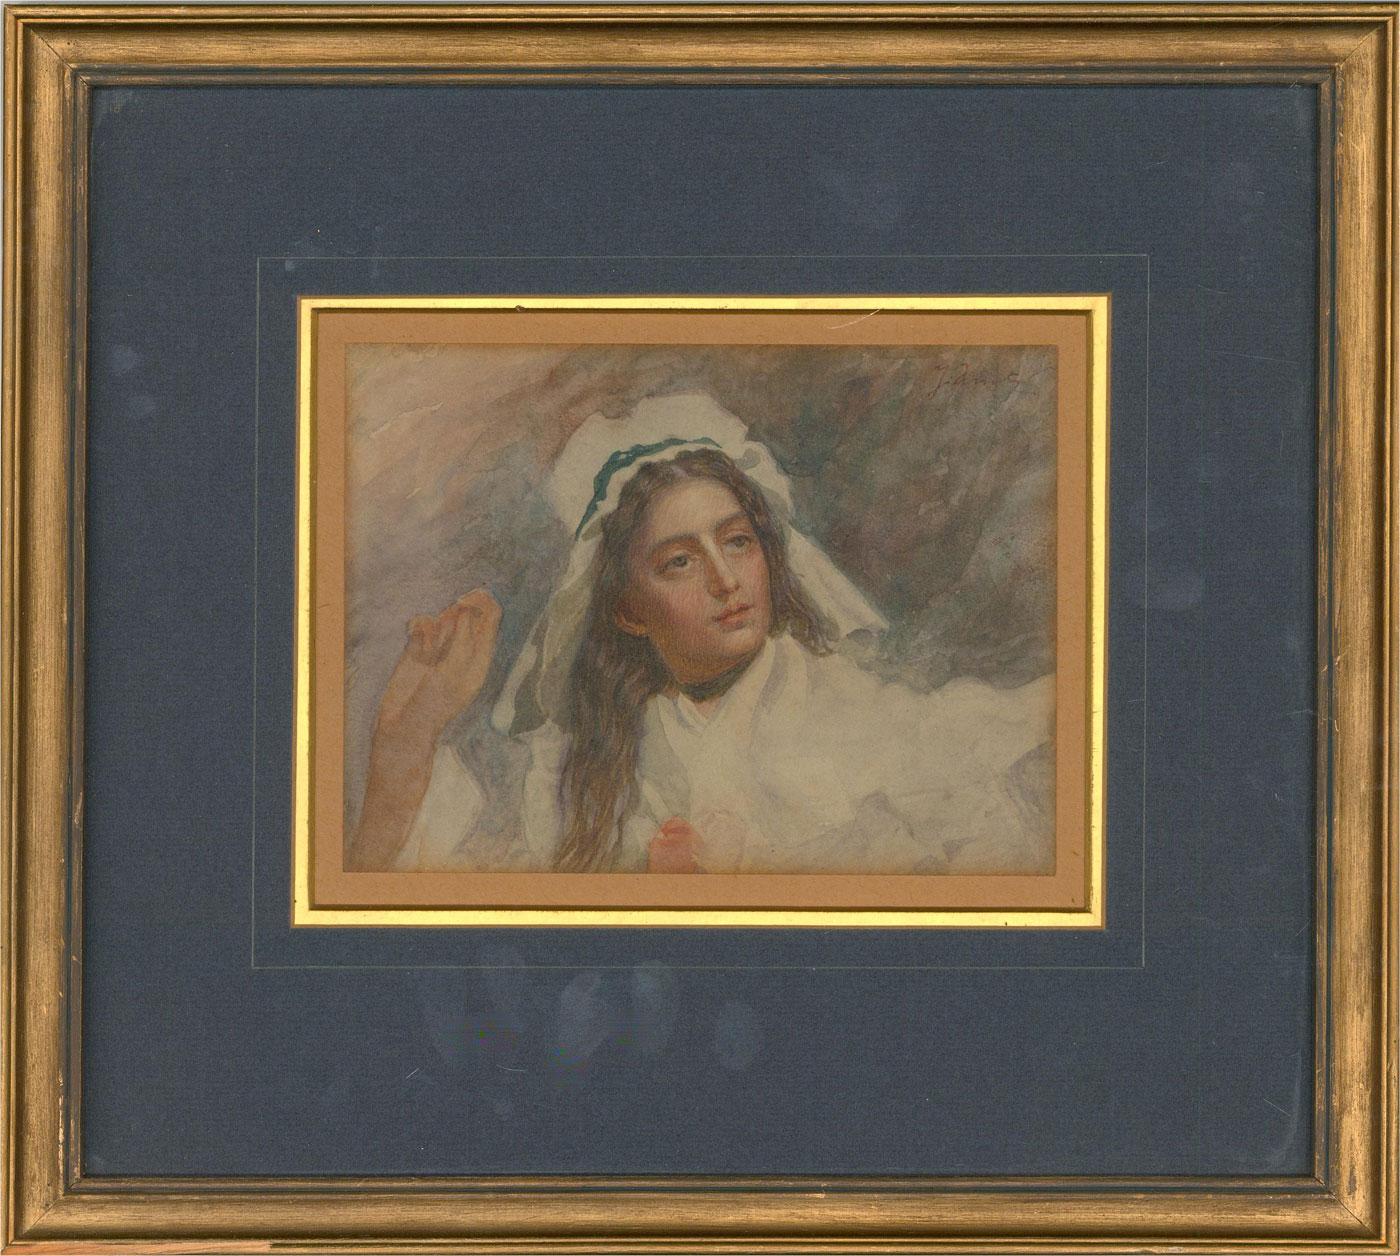 Unknown Portrait - Late 19th Century Watercolour - Pretty Woman In White